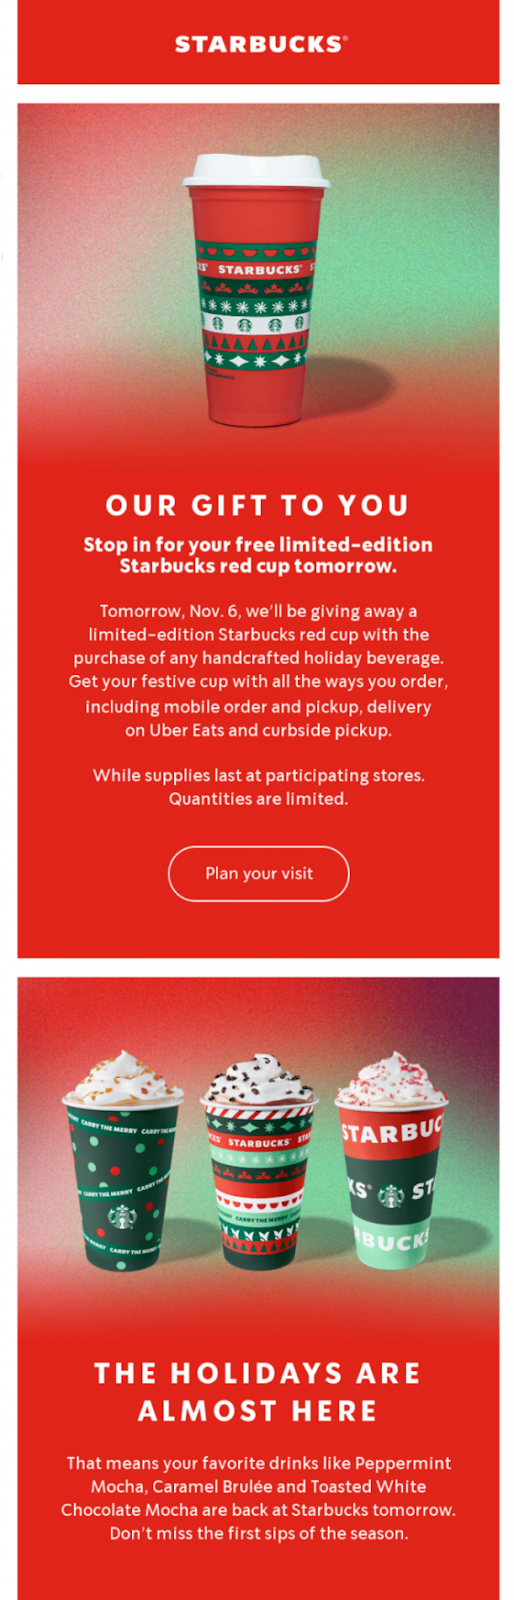 Esempio di email marketing natalizio Starbucks (regali e gadget in tema)